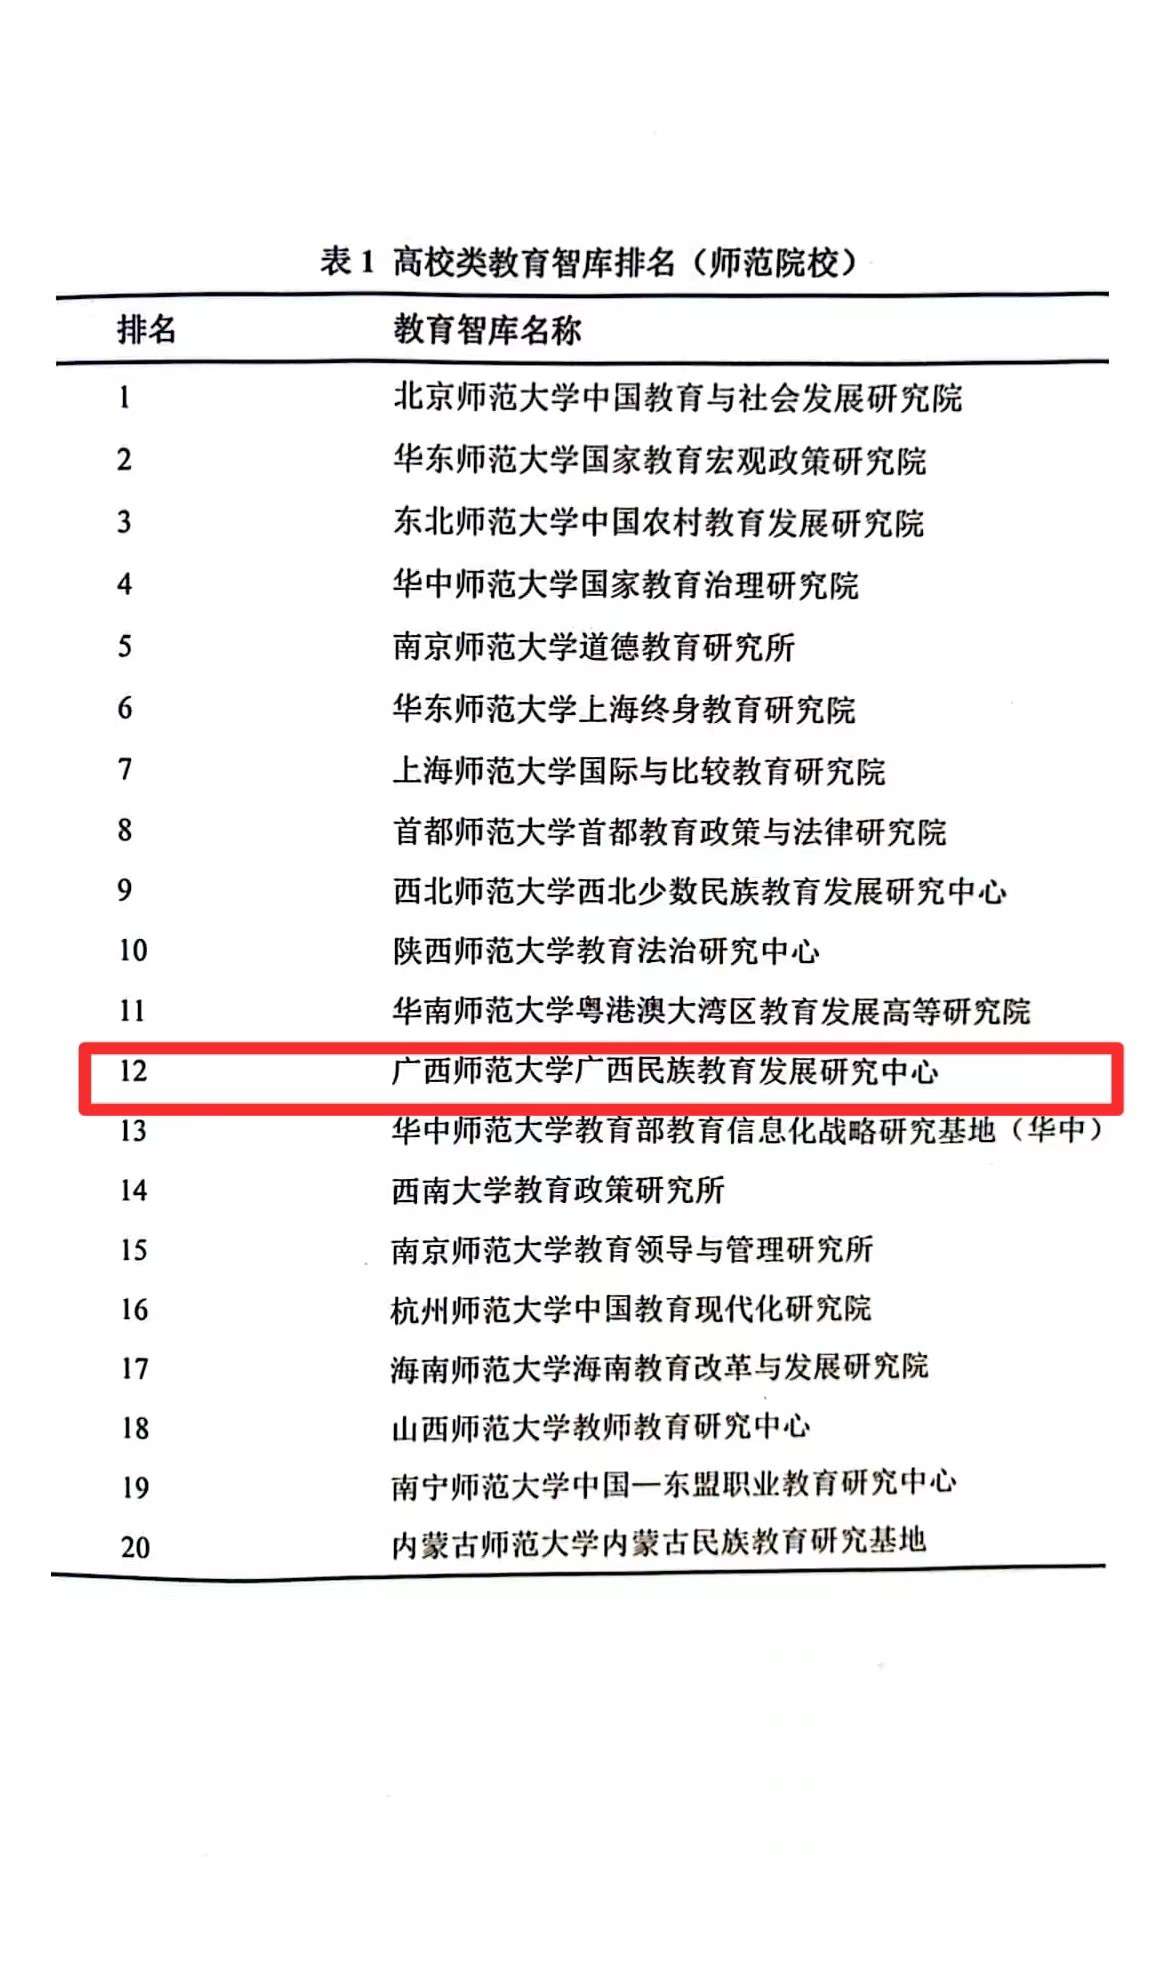 广西师范大学广西民族教育发展研究中心入选“中国教育智库榜单（CETTE）”